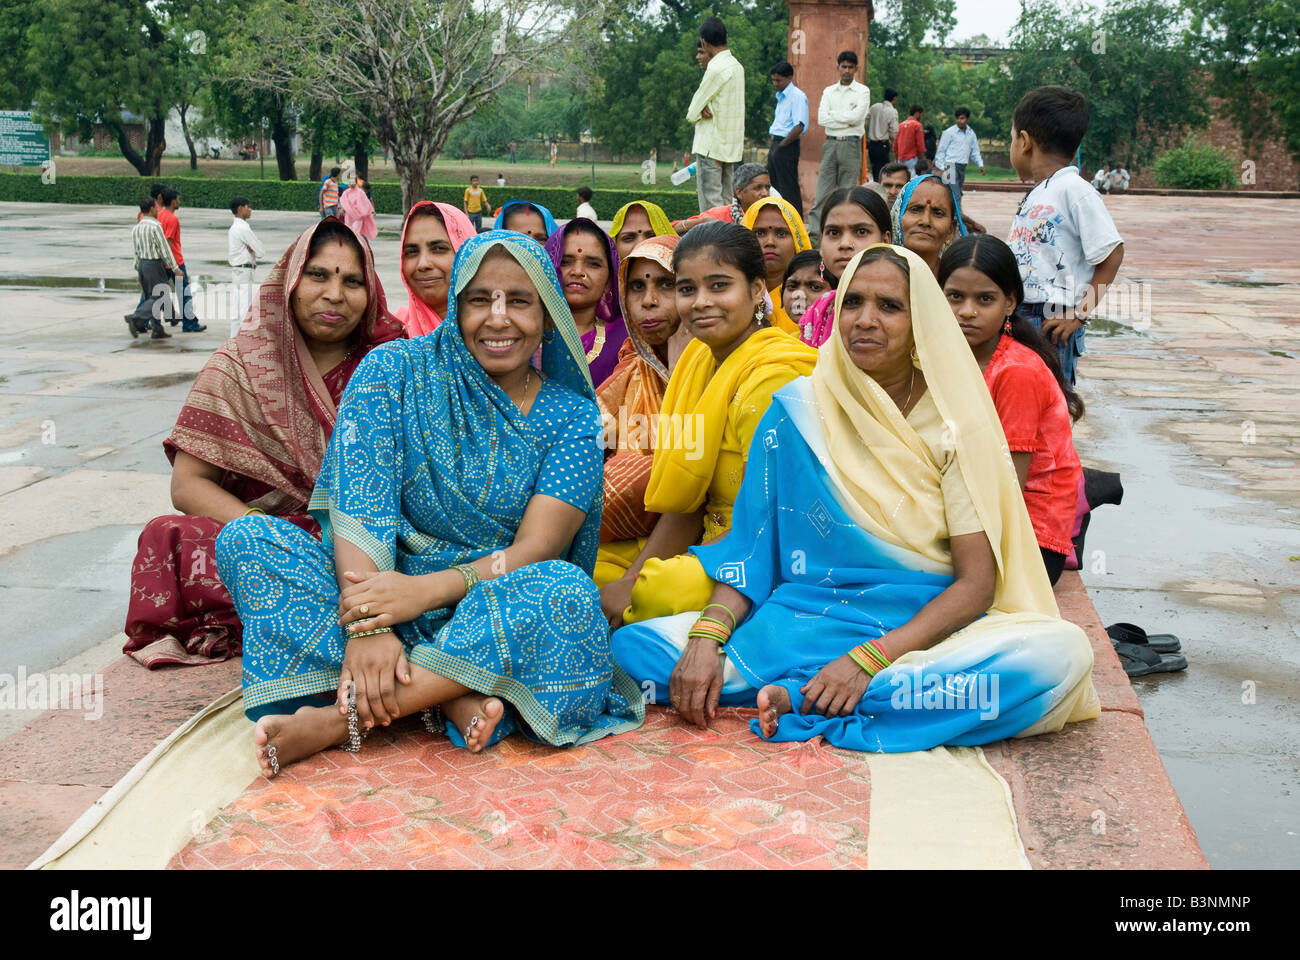 India Delhi donne locali in variopinti costumi tradizionali in un parco Foto Stock